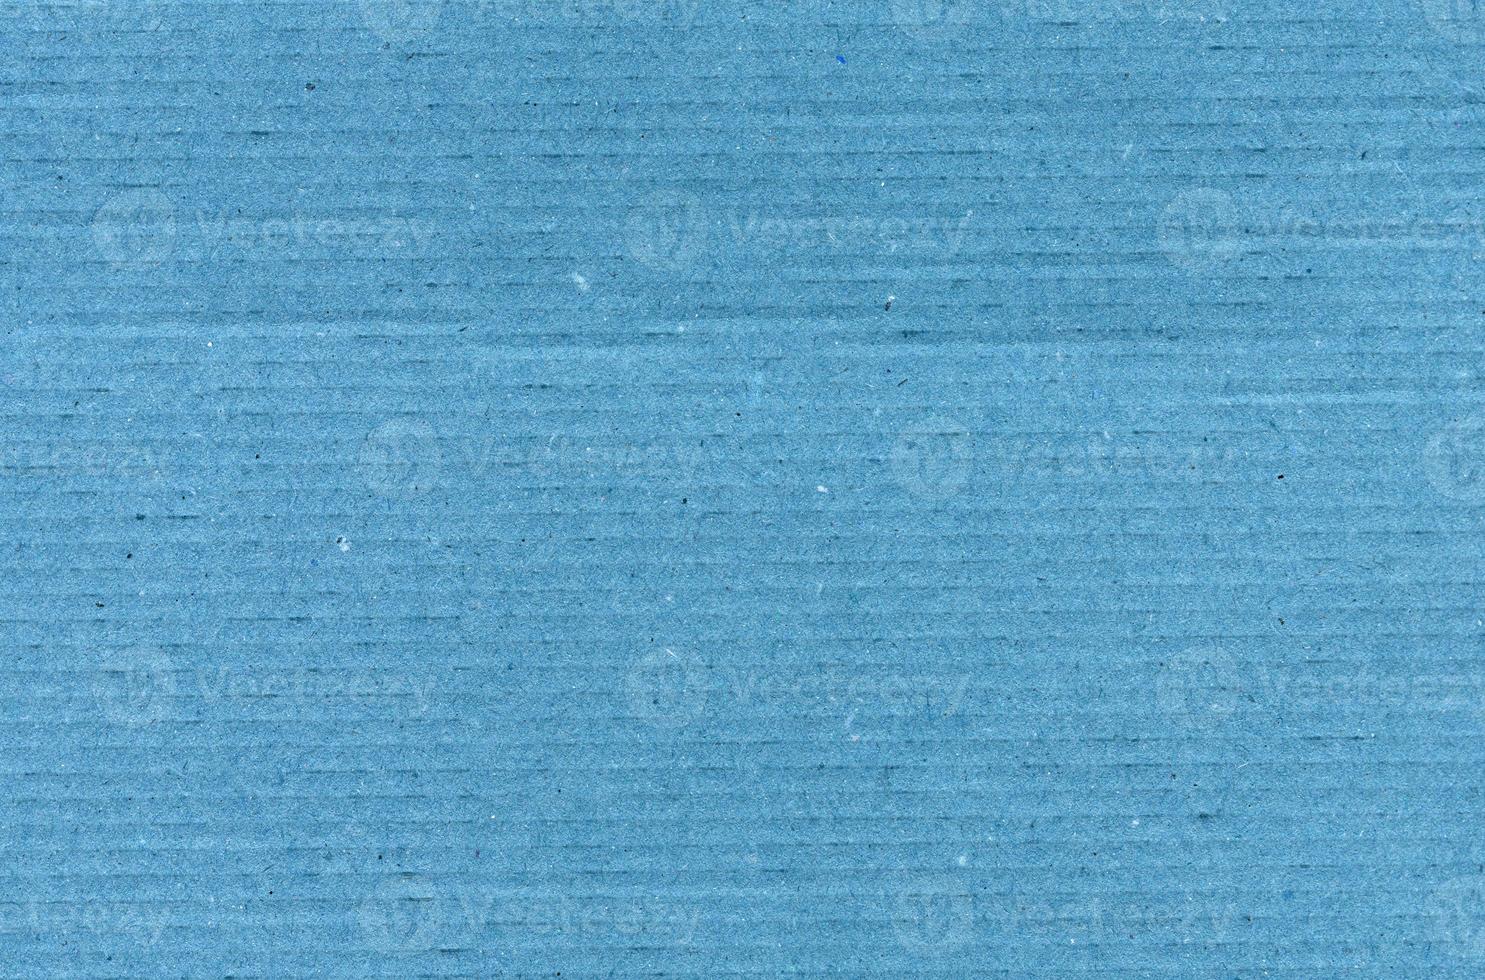 fondo de textura de cartón azul foto